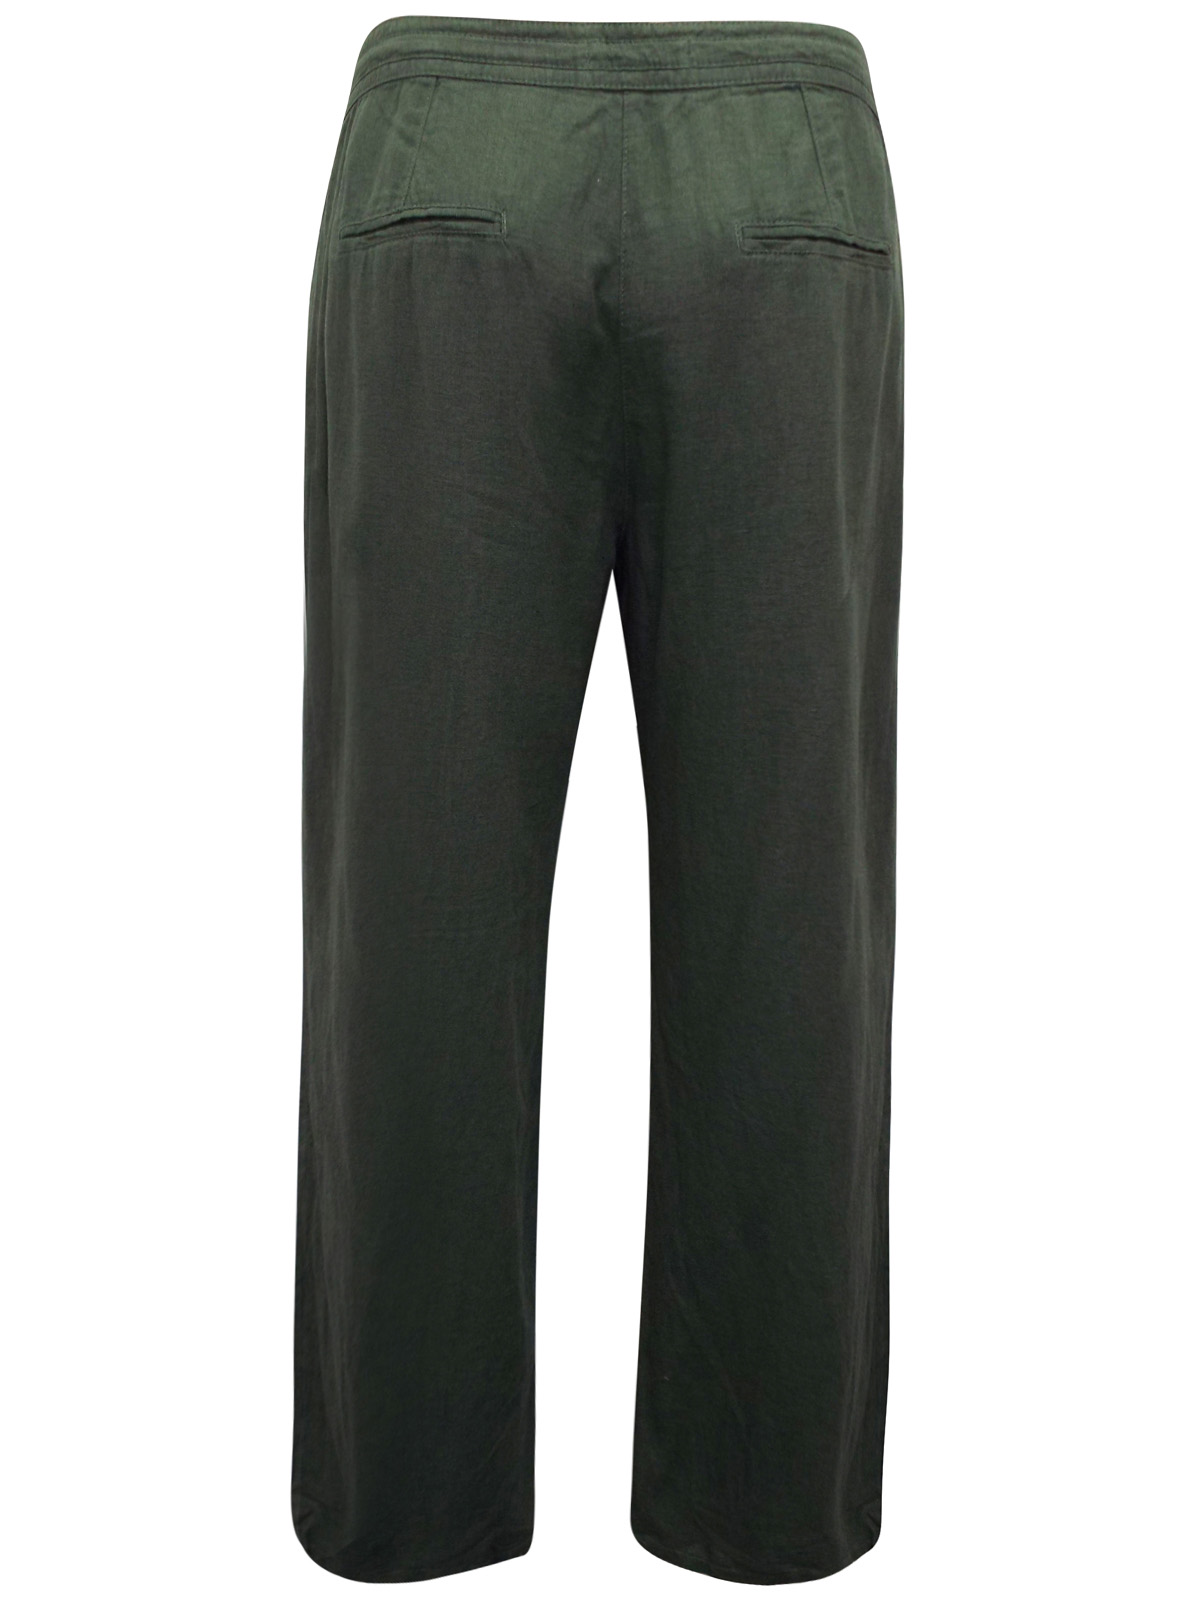 N3XT KHAKI Linen Blend Drawstring Waist Trousers - Plus Size 22 to 34